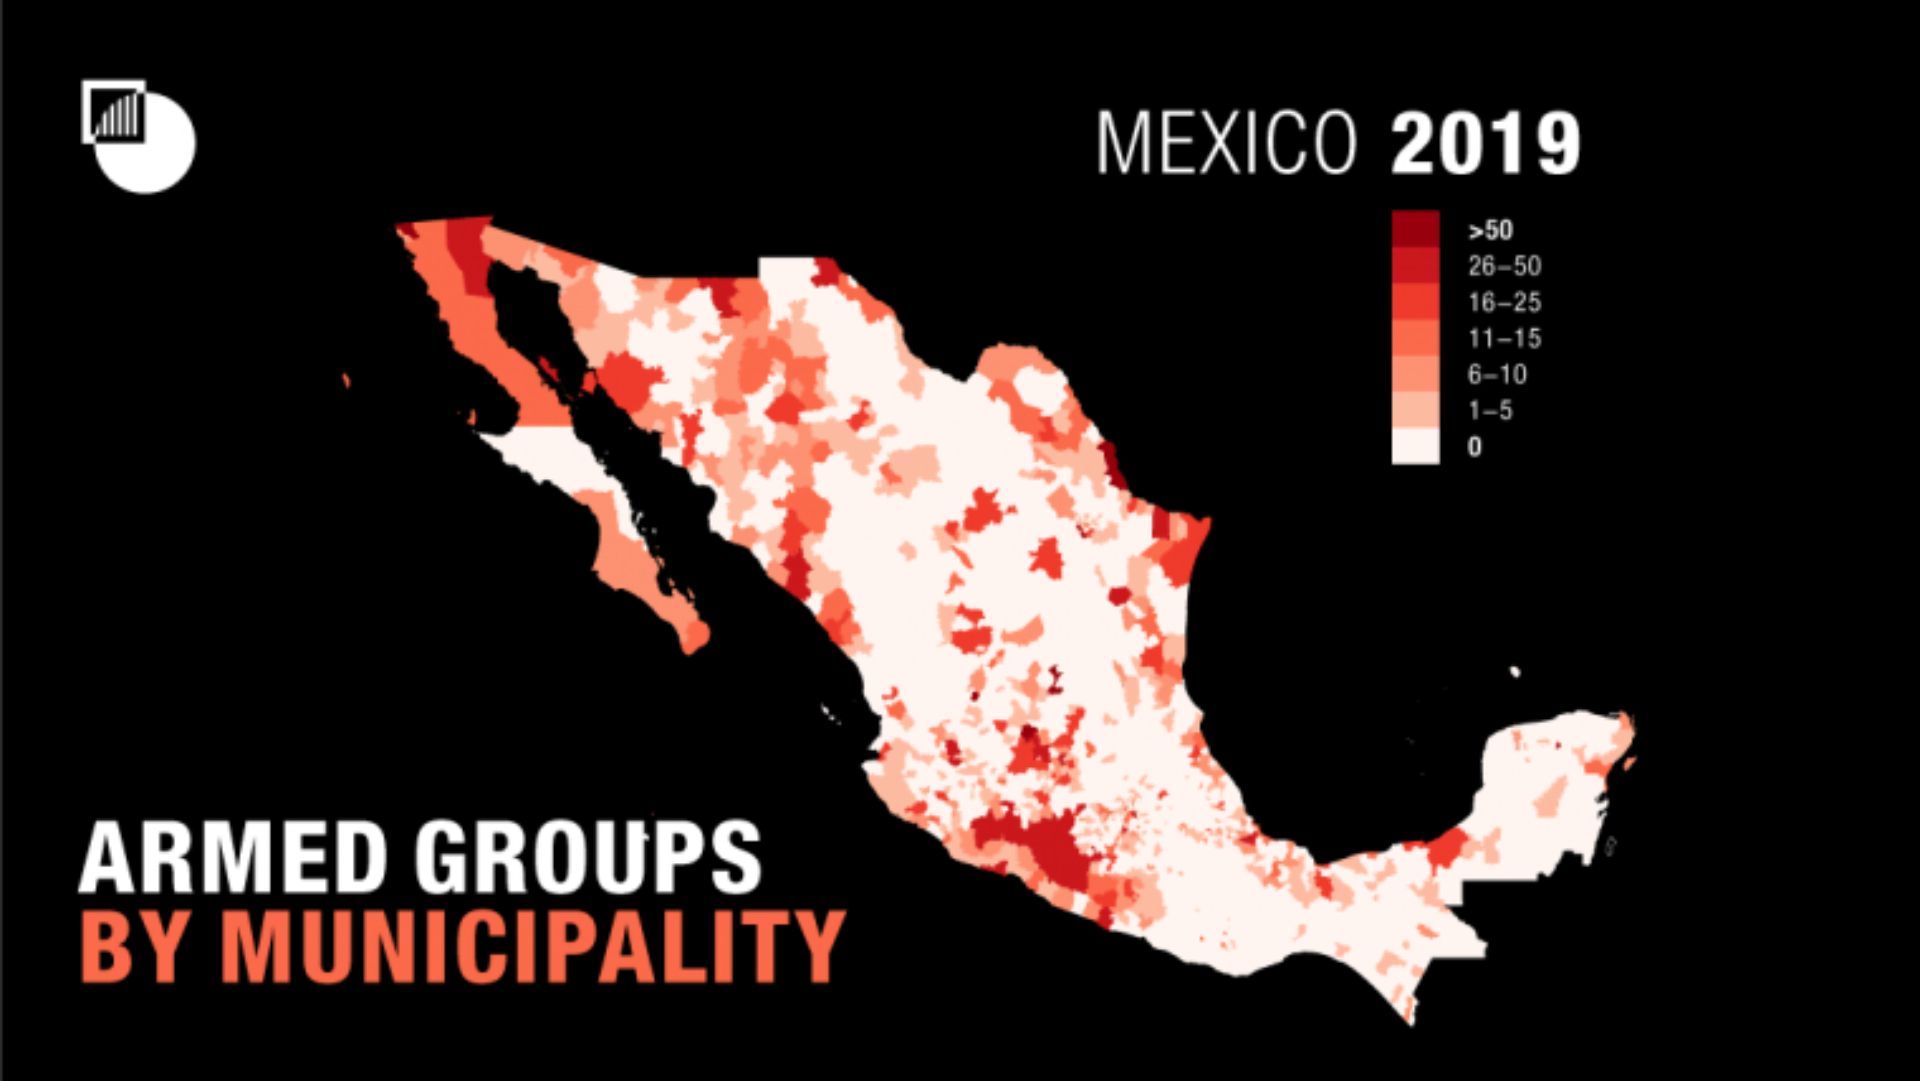 El mapa para 2019 muestra un aumento de nuevos grupos en el noroeste del país y en Tierra Caliente (Foto: The International Crisis Group)